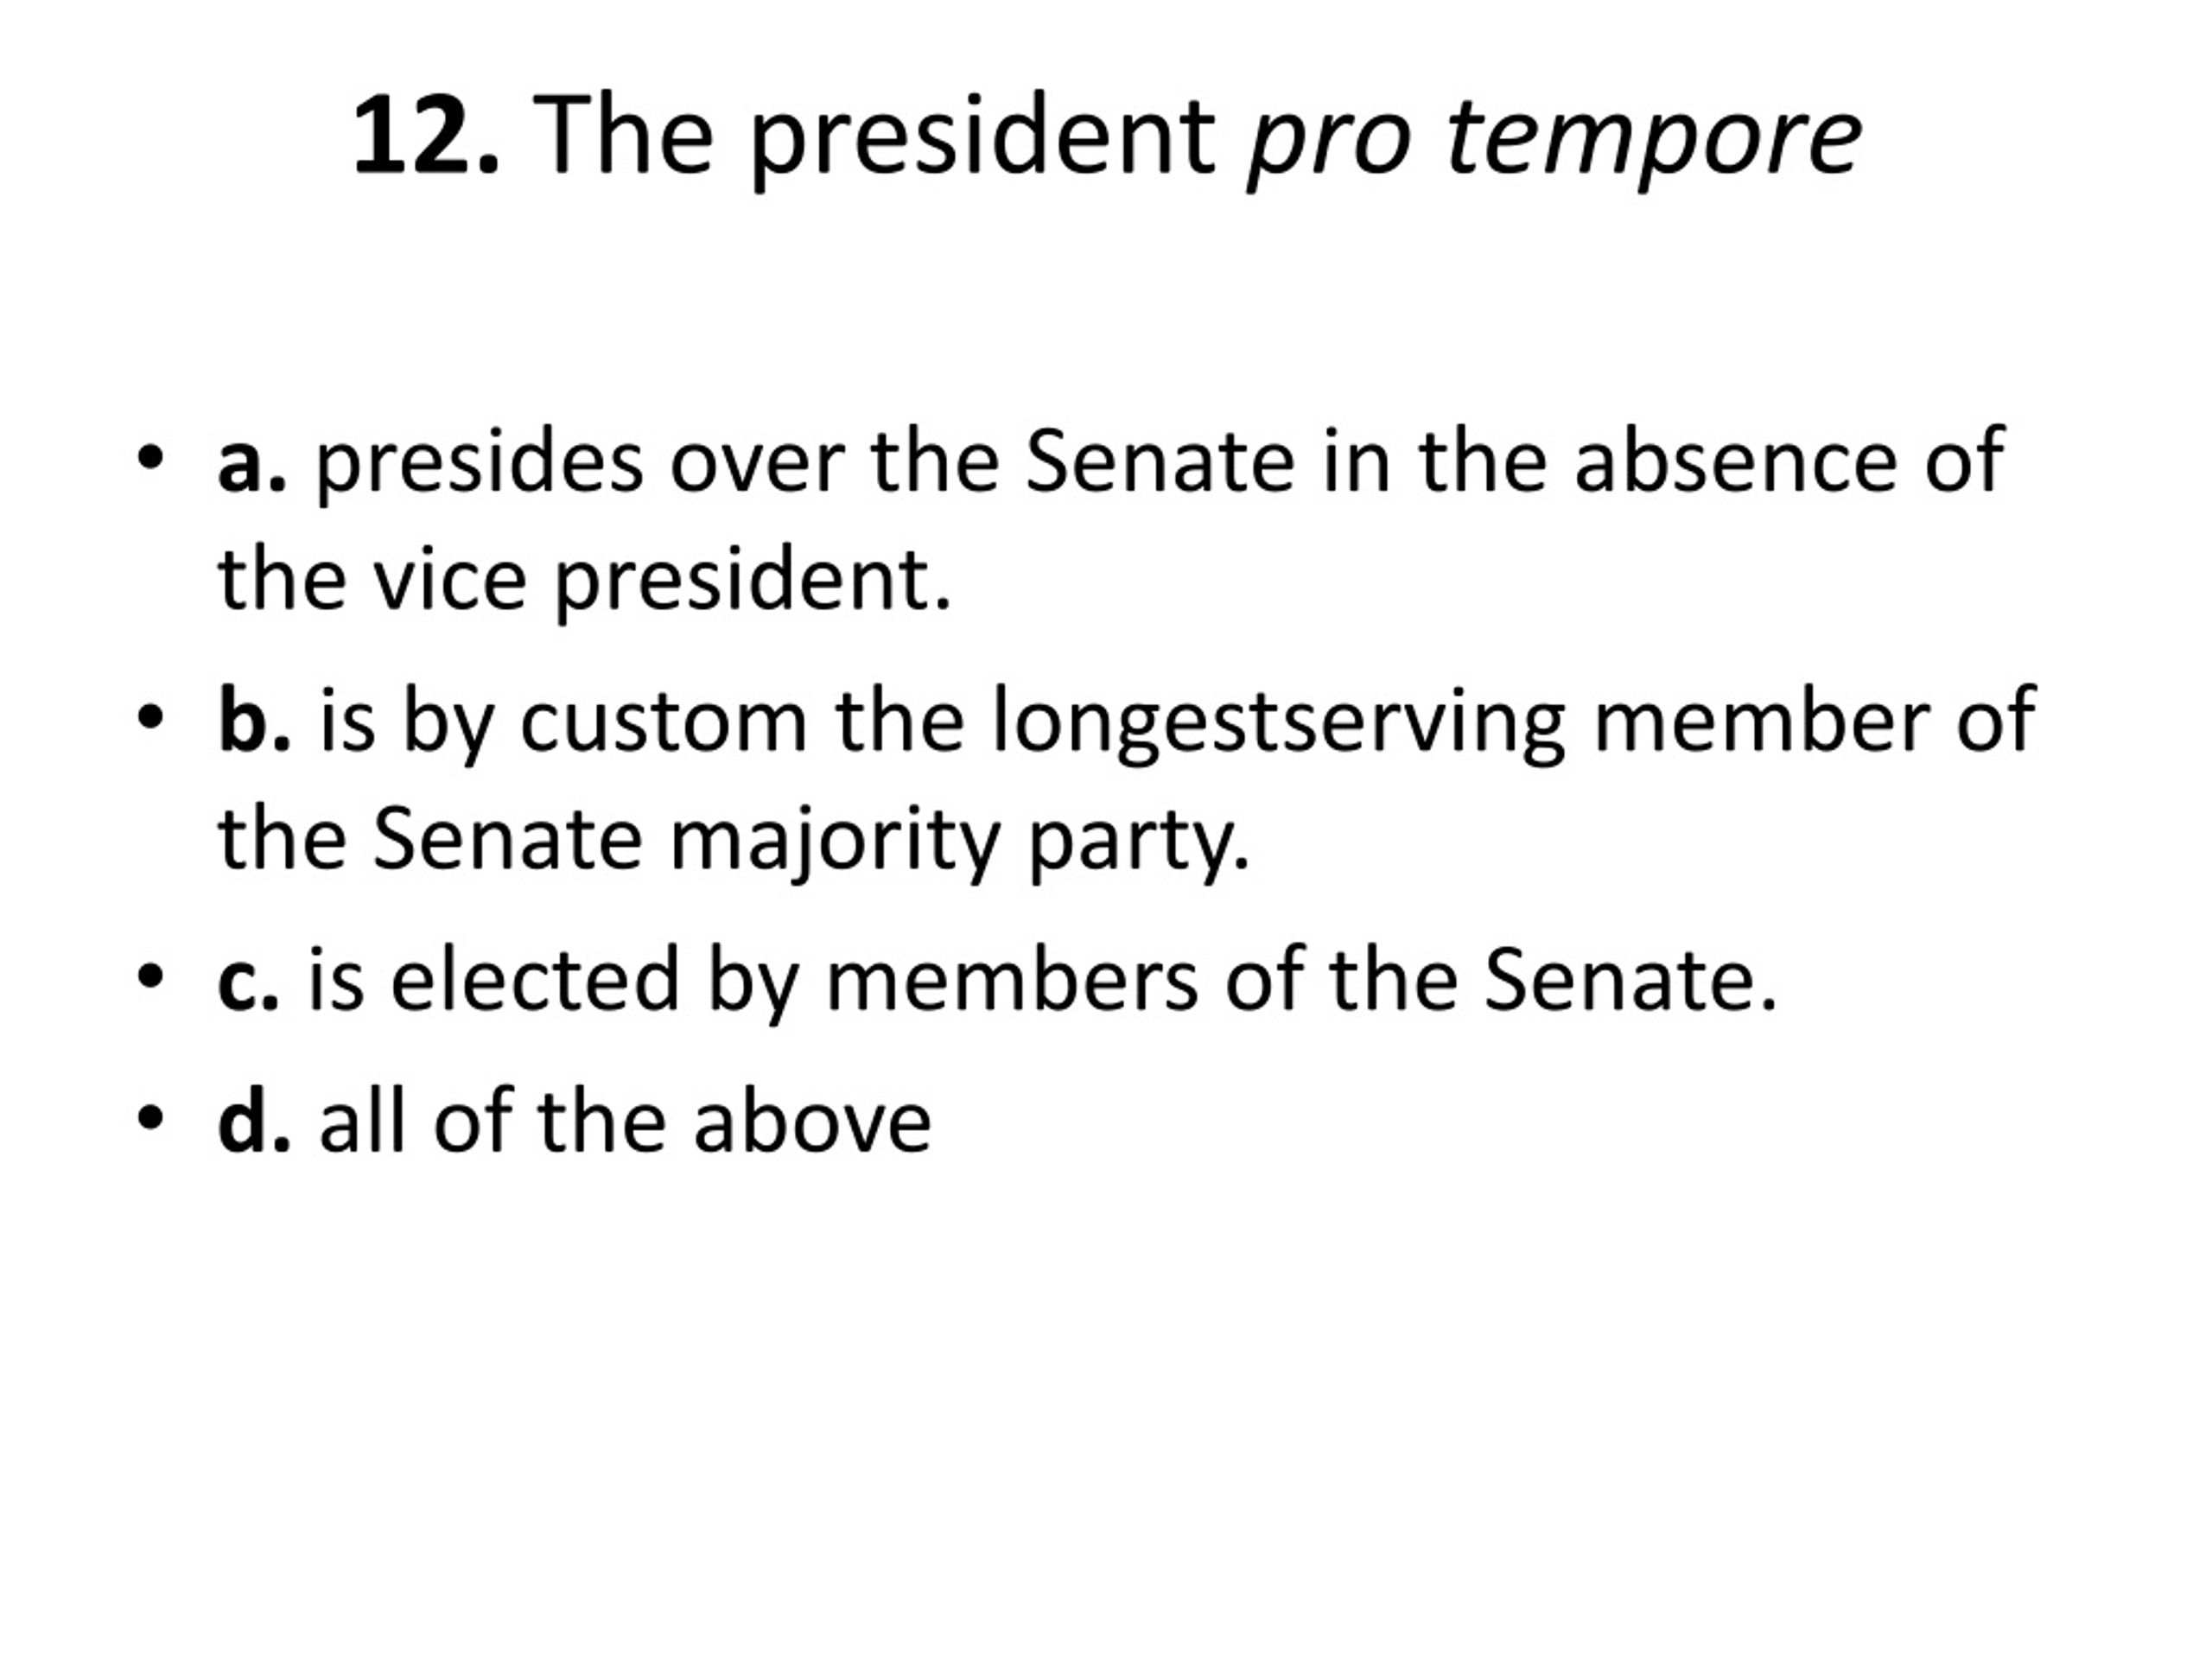 president pro tempore definition